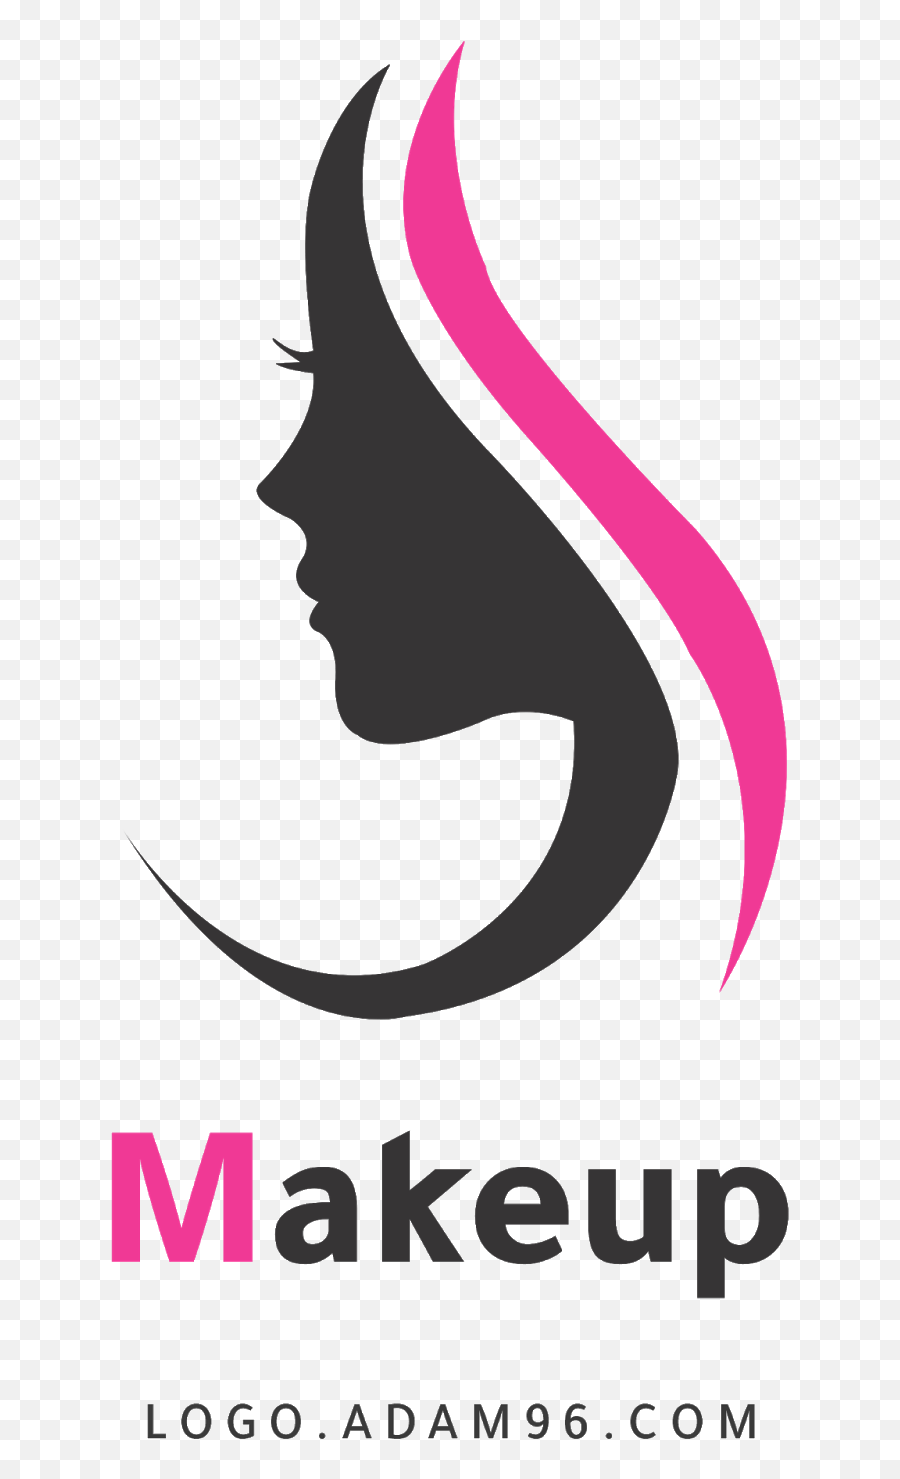 Logo Makeup Without Rights Psd High - Beauty Care Emoji,Makeup Emoji